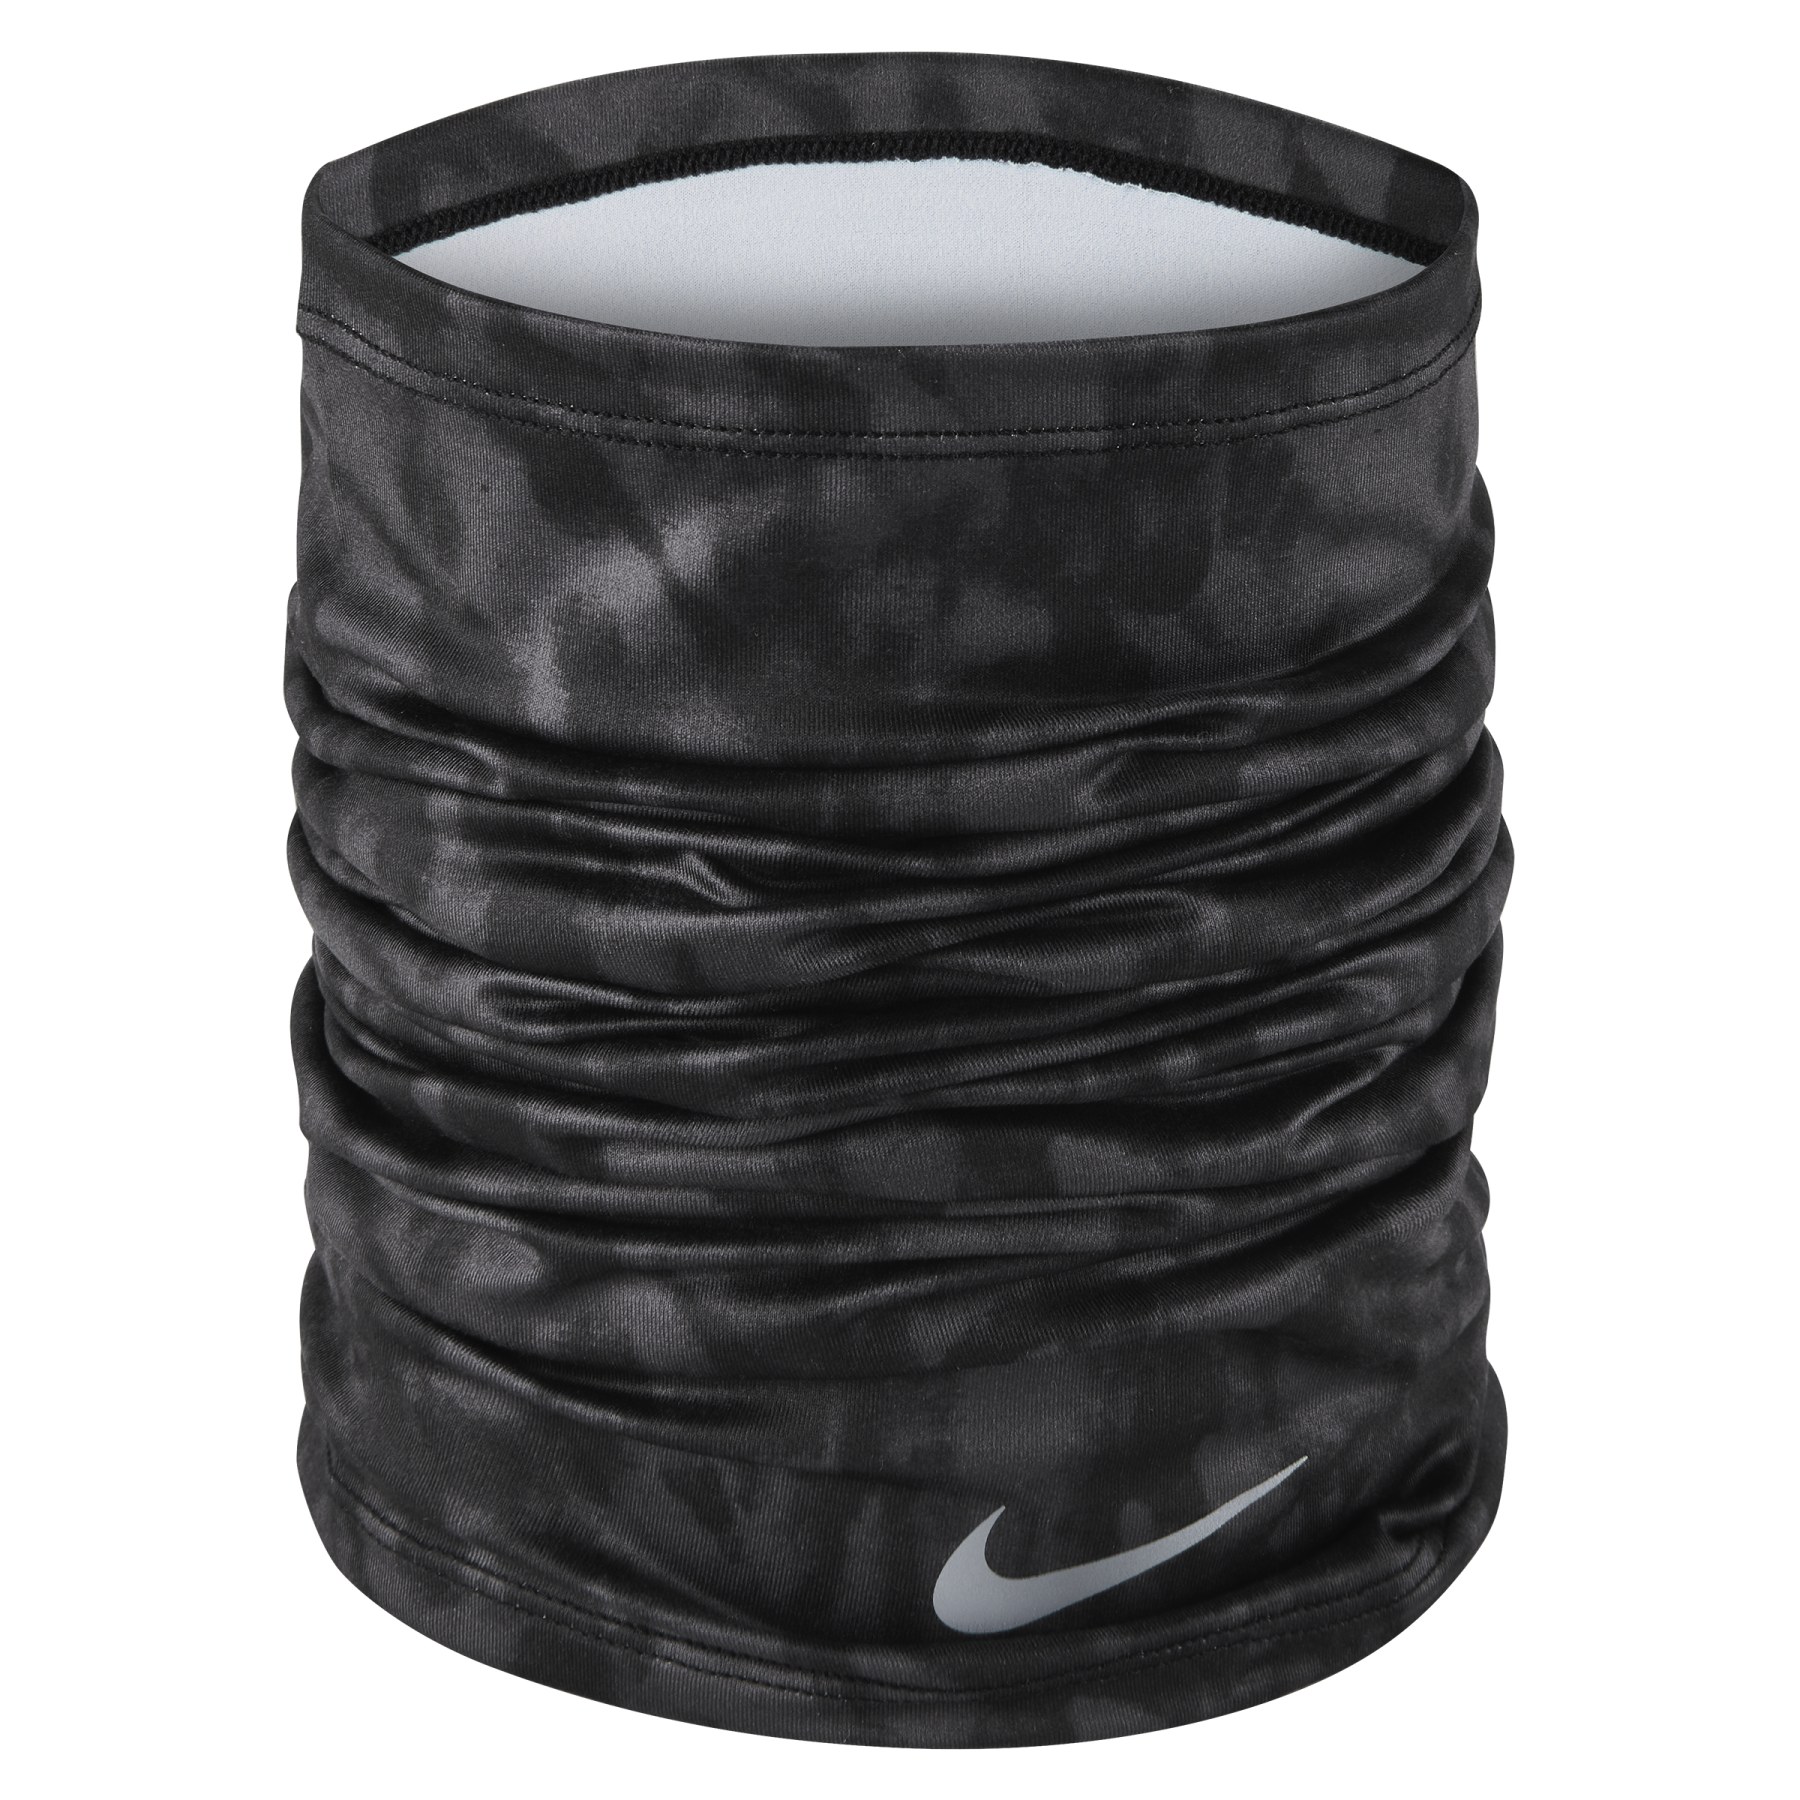 Produktbild von Nike DRI-Fit Wrap Multifunktionstuch - black/silver 923